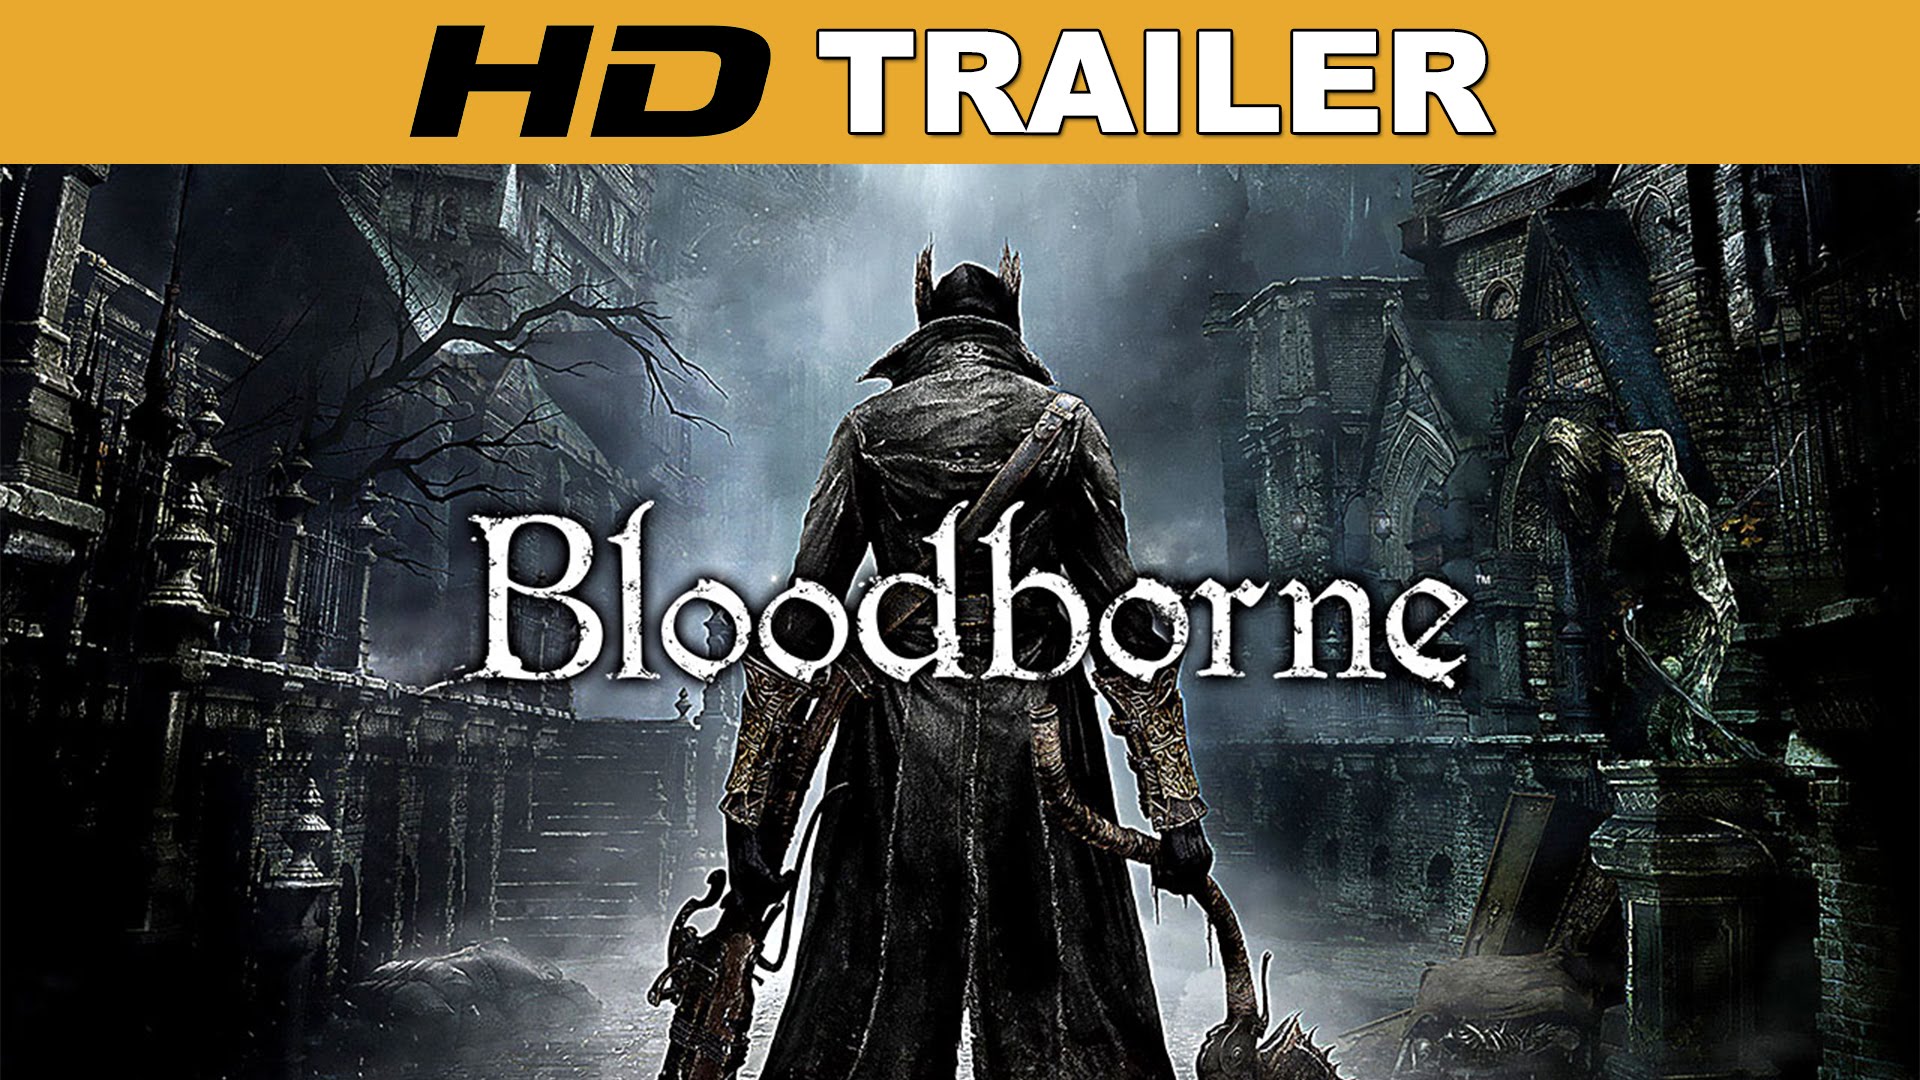 Bloodborne erscheint am 5. Februar für die PlayStation 4